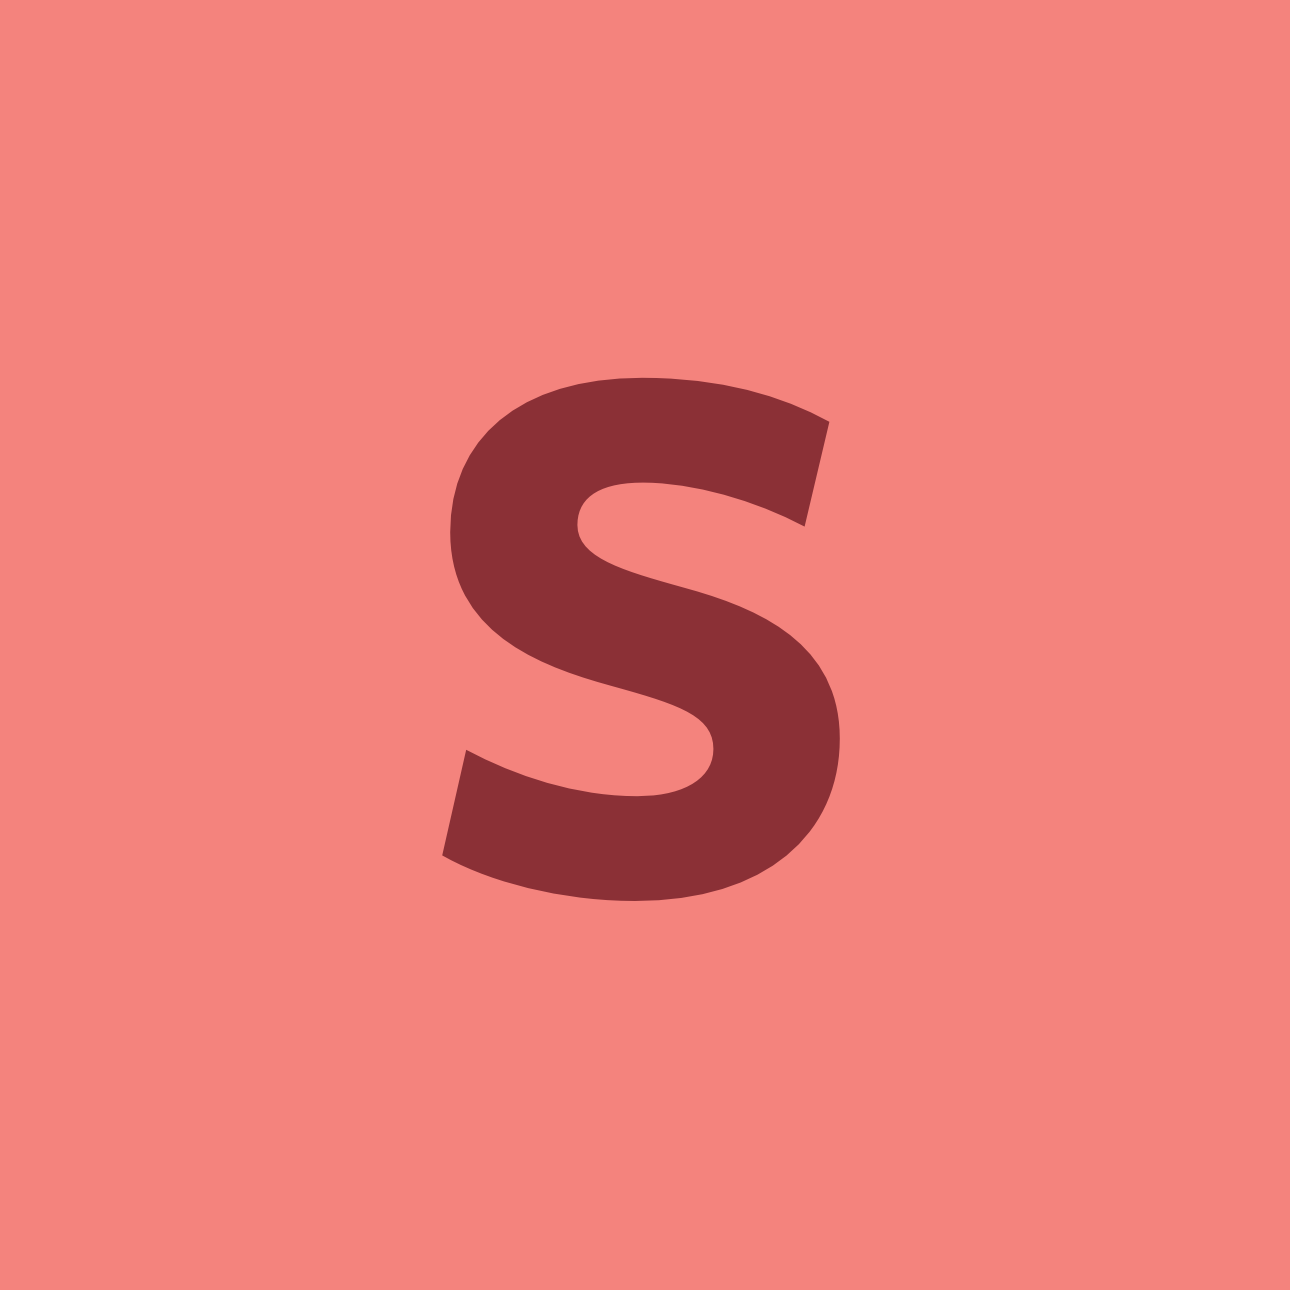 Sned's's Logo